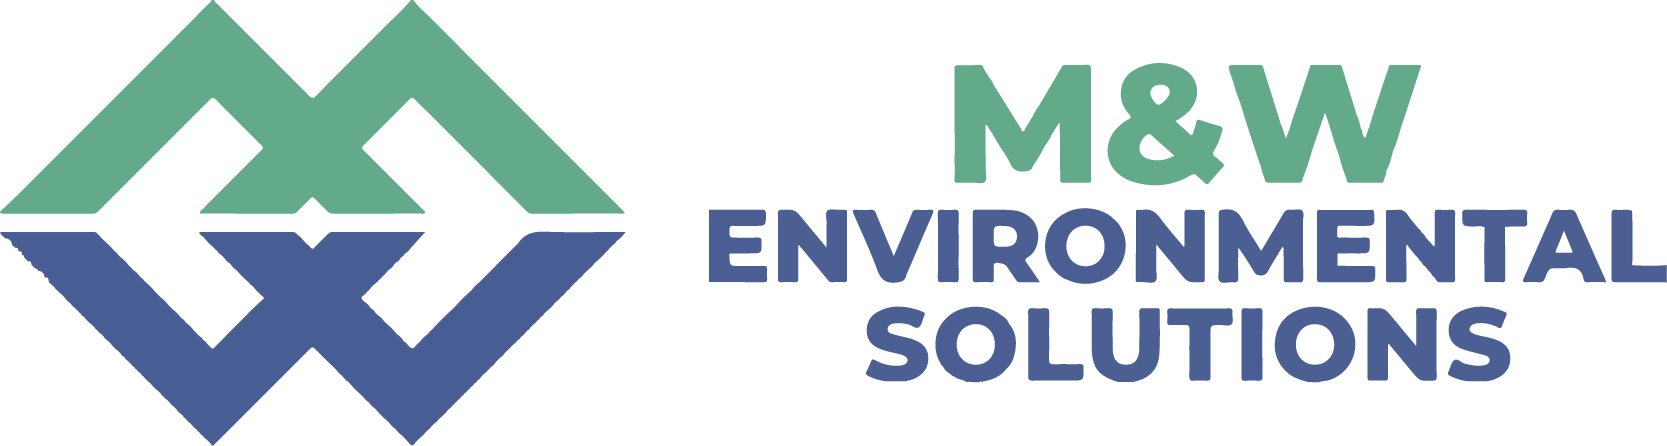 M&W Environmental Solutions 05